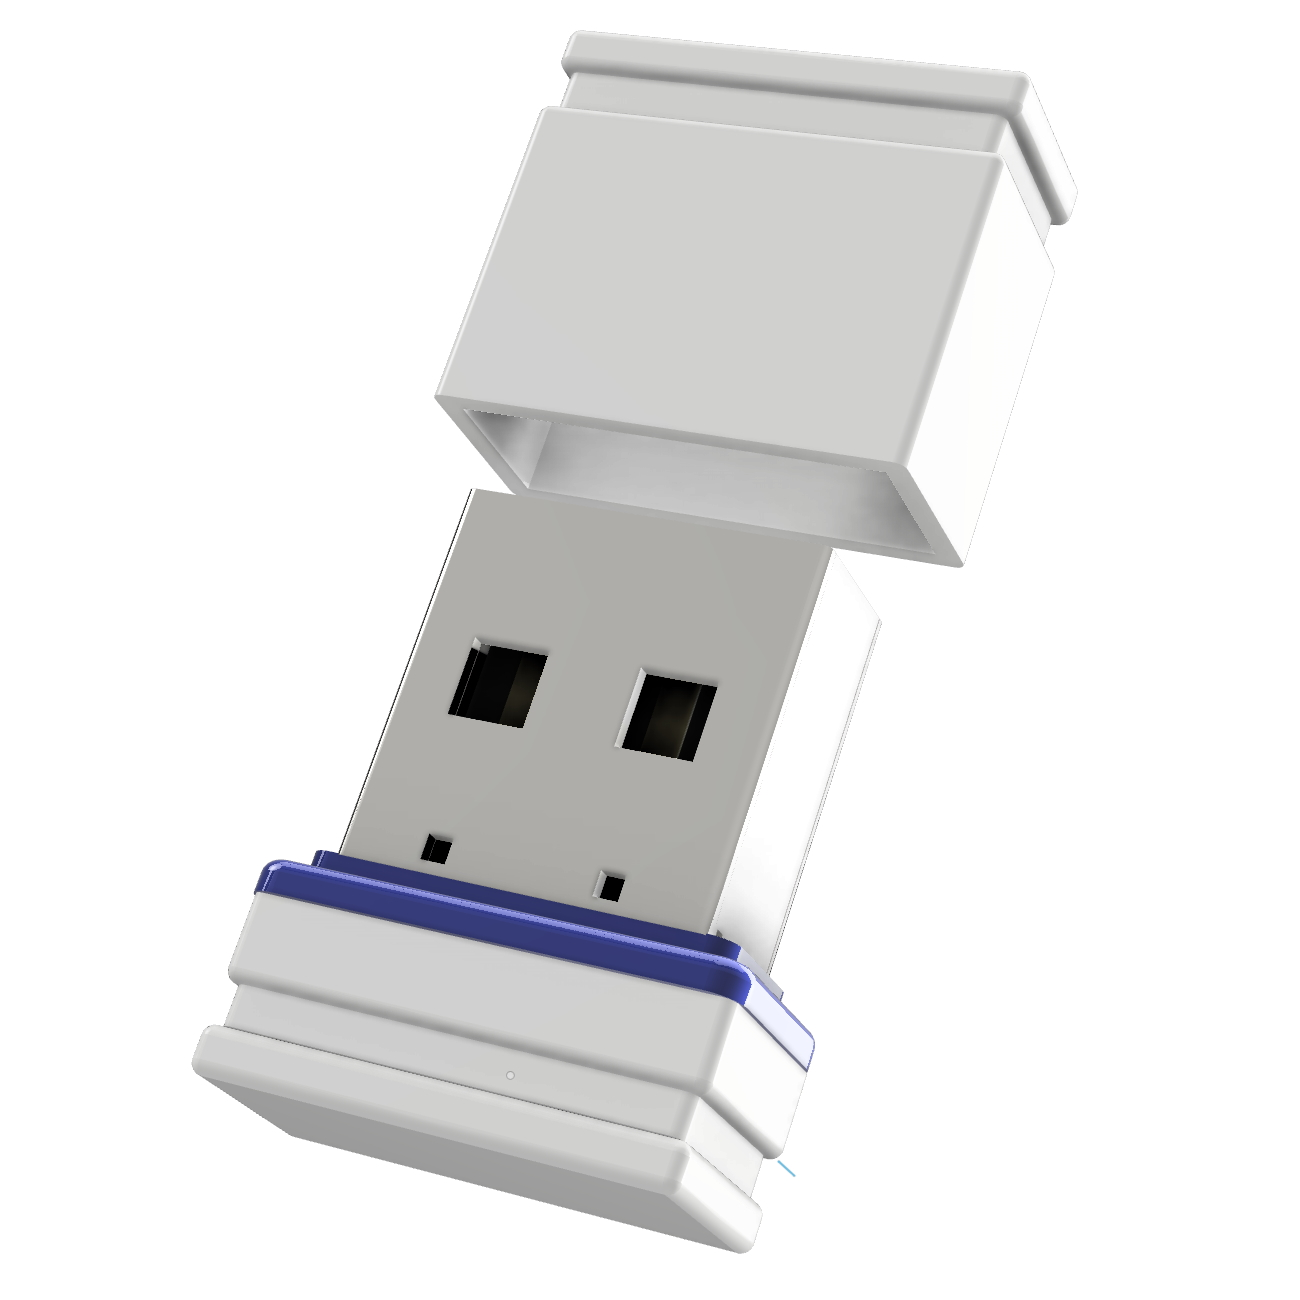 P1 Mini GERMANY USB-Stick GB) (Weiss/Blau, USB ®ULTRA 64